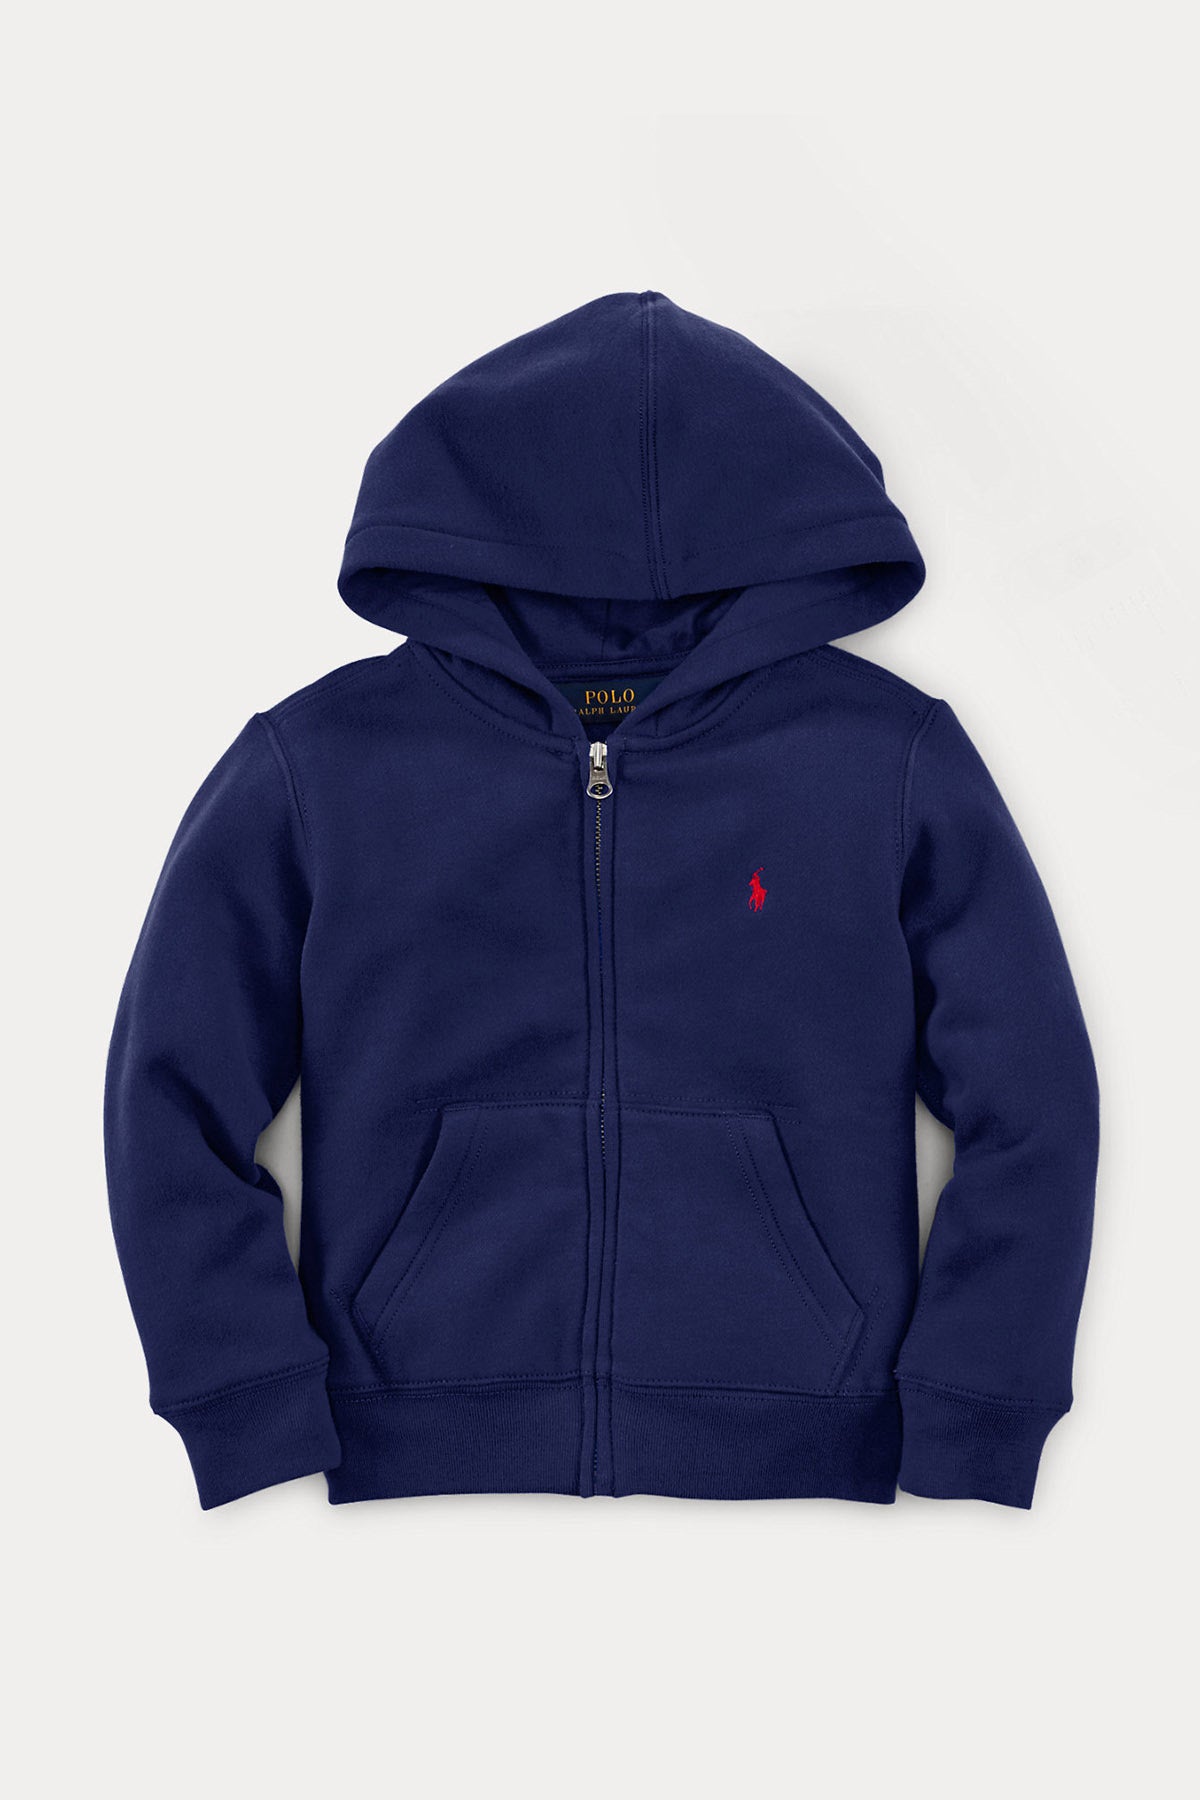 Polo Ralph Lauren Kids 3-7 Yaş Erkek Çocuk Kapüşonlu Sweatshirt Ceket-Libas Trendy Fashion Store